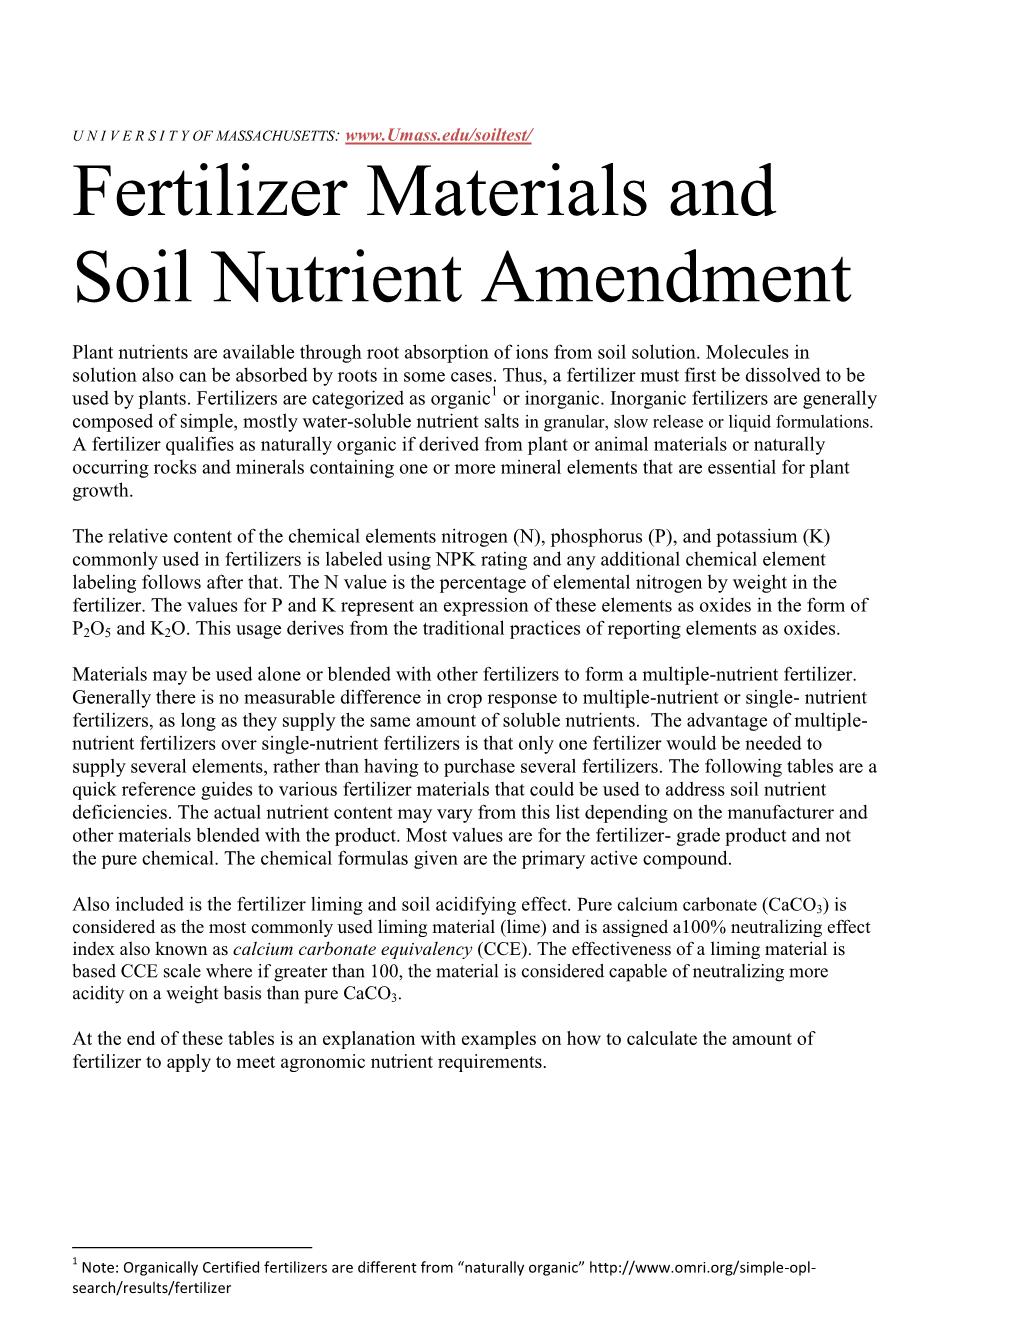 Fertilizer Materials and Soil Nutrient Amendment